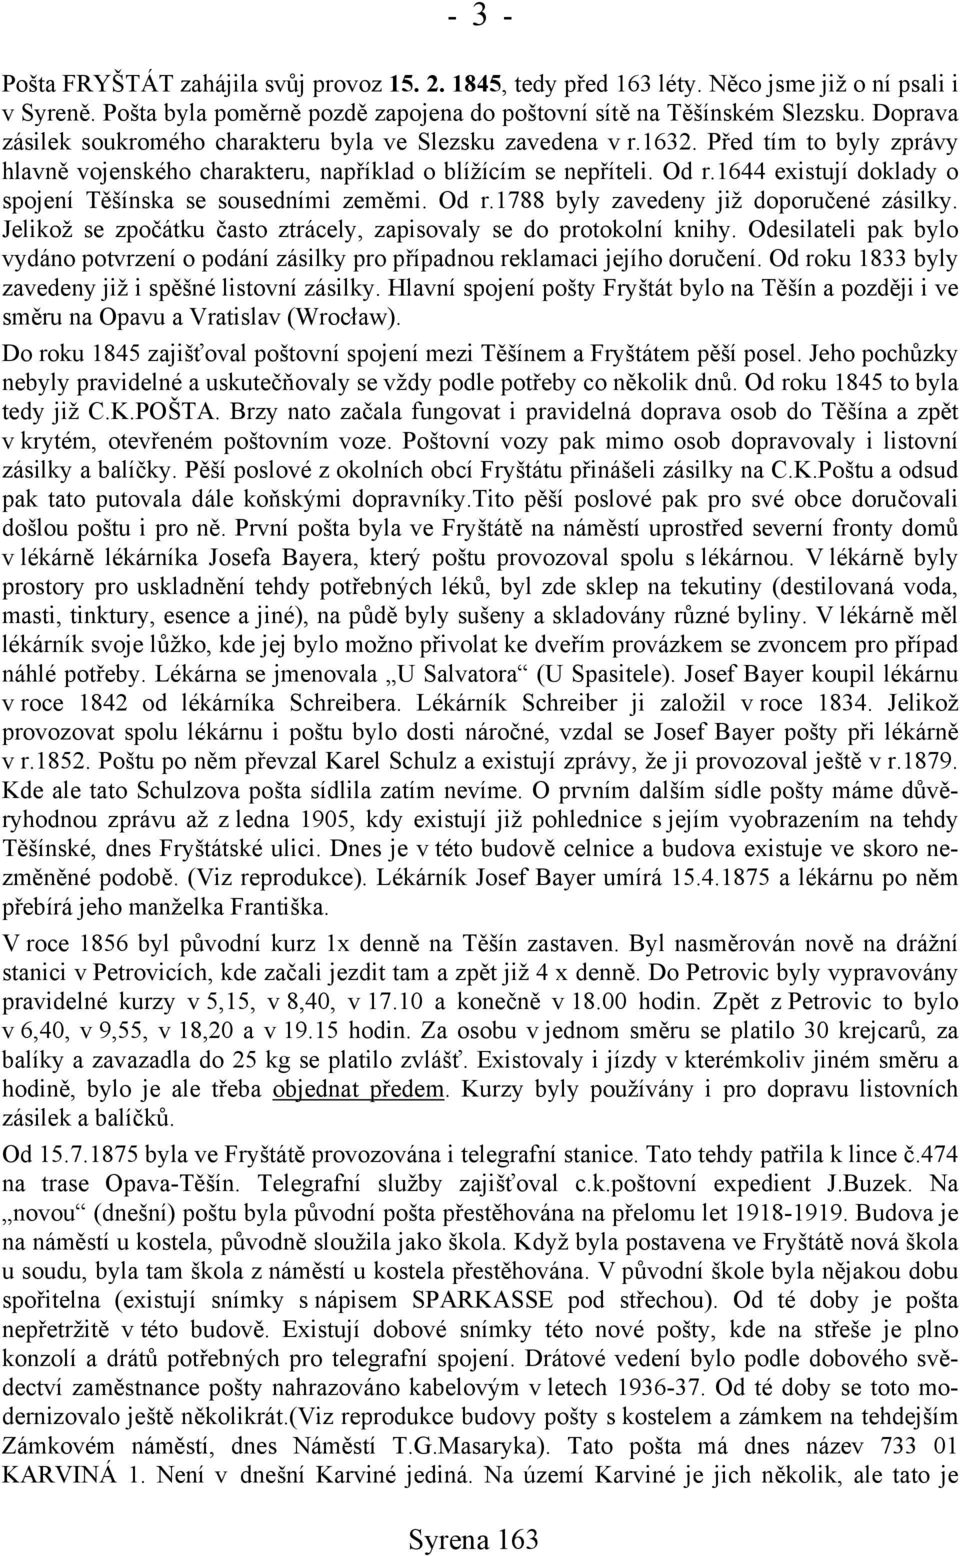 1644 existují doklady o spojení Těšínska se sousedními zeměmi. Od r.1788 byly zavedeny již doporučené zásilky. Jelikož se zpočátku často ztrácely, zapisovaly se do protokolní knihy.